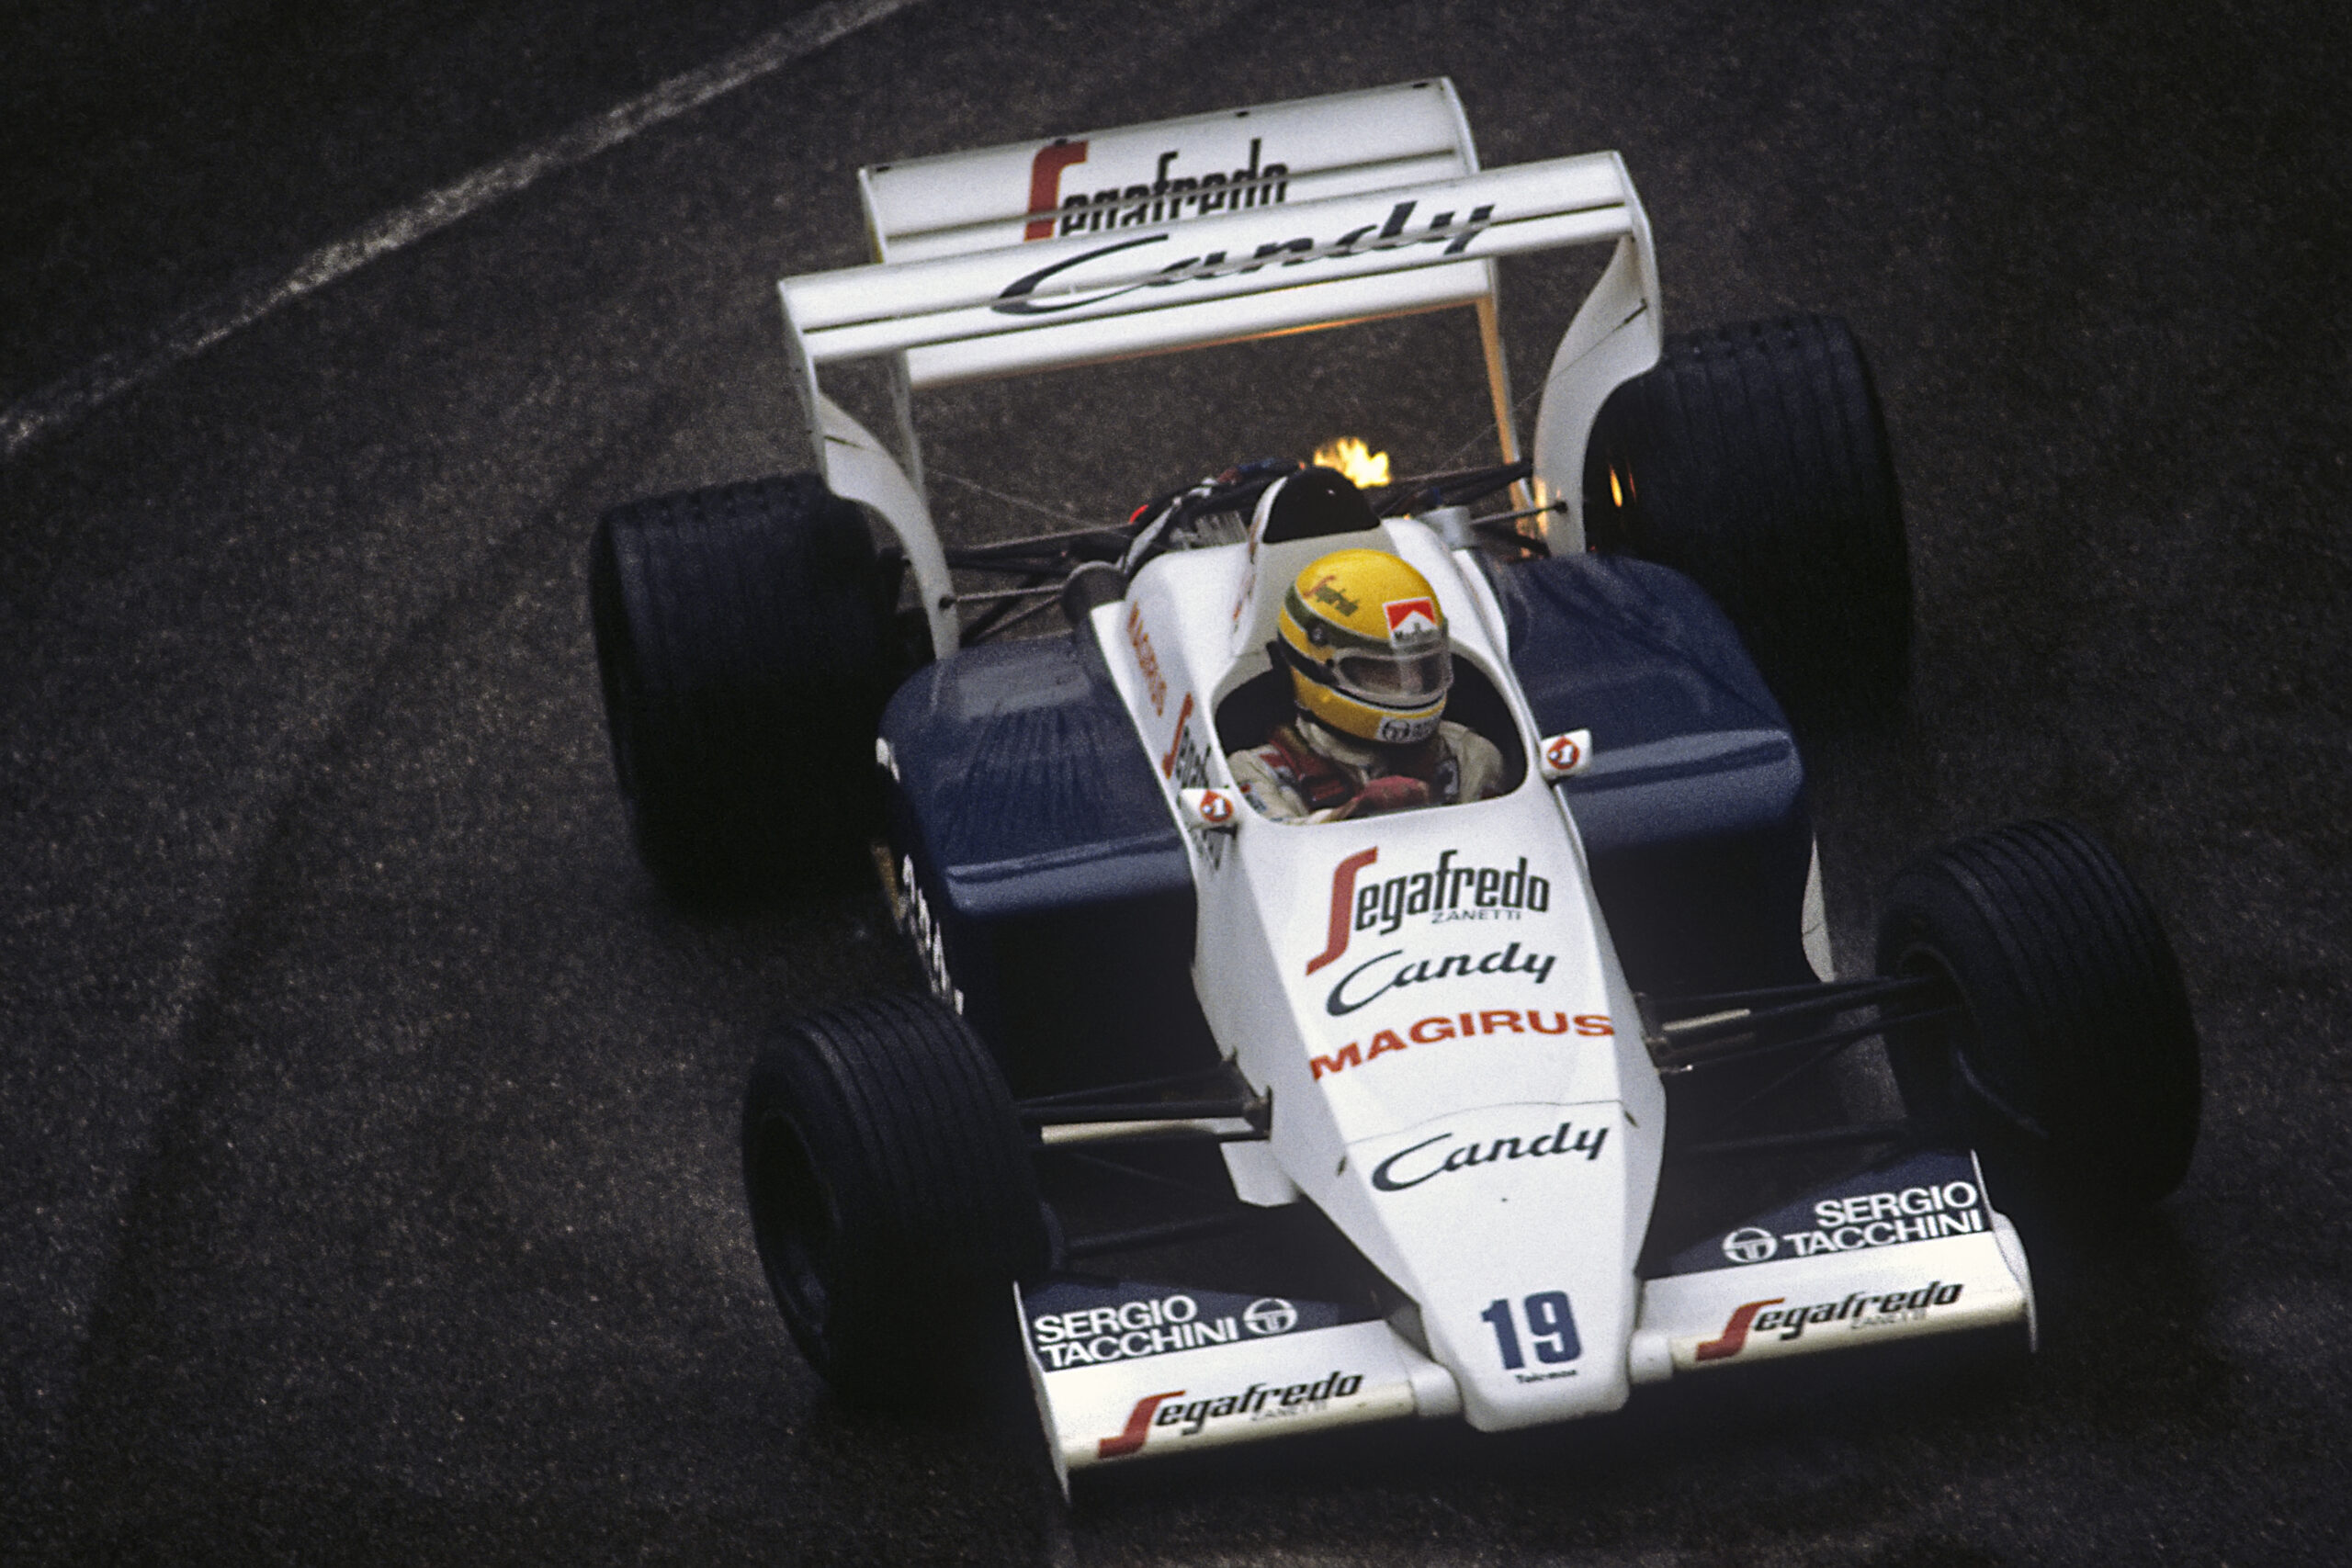 Ayrton Senna’s Top 5 Formula 1 Drives, Ranked